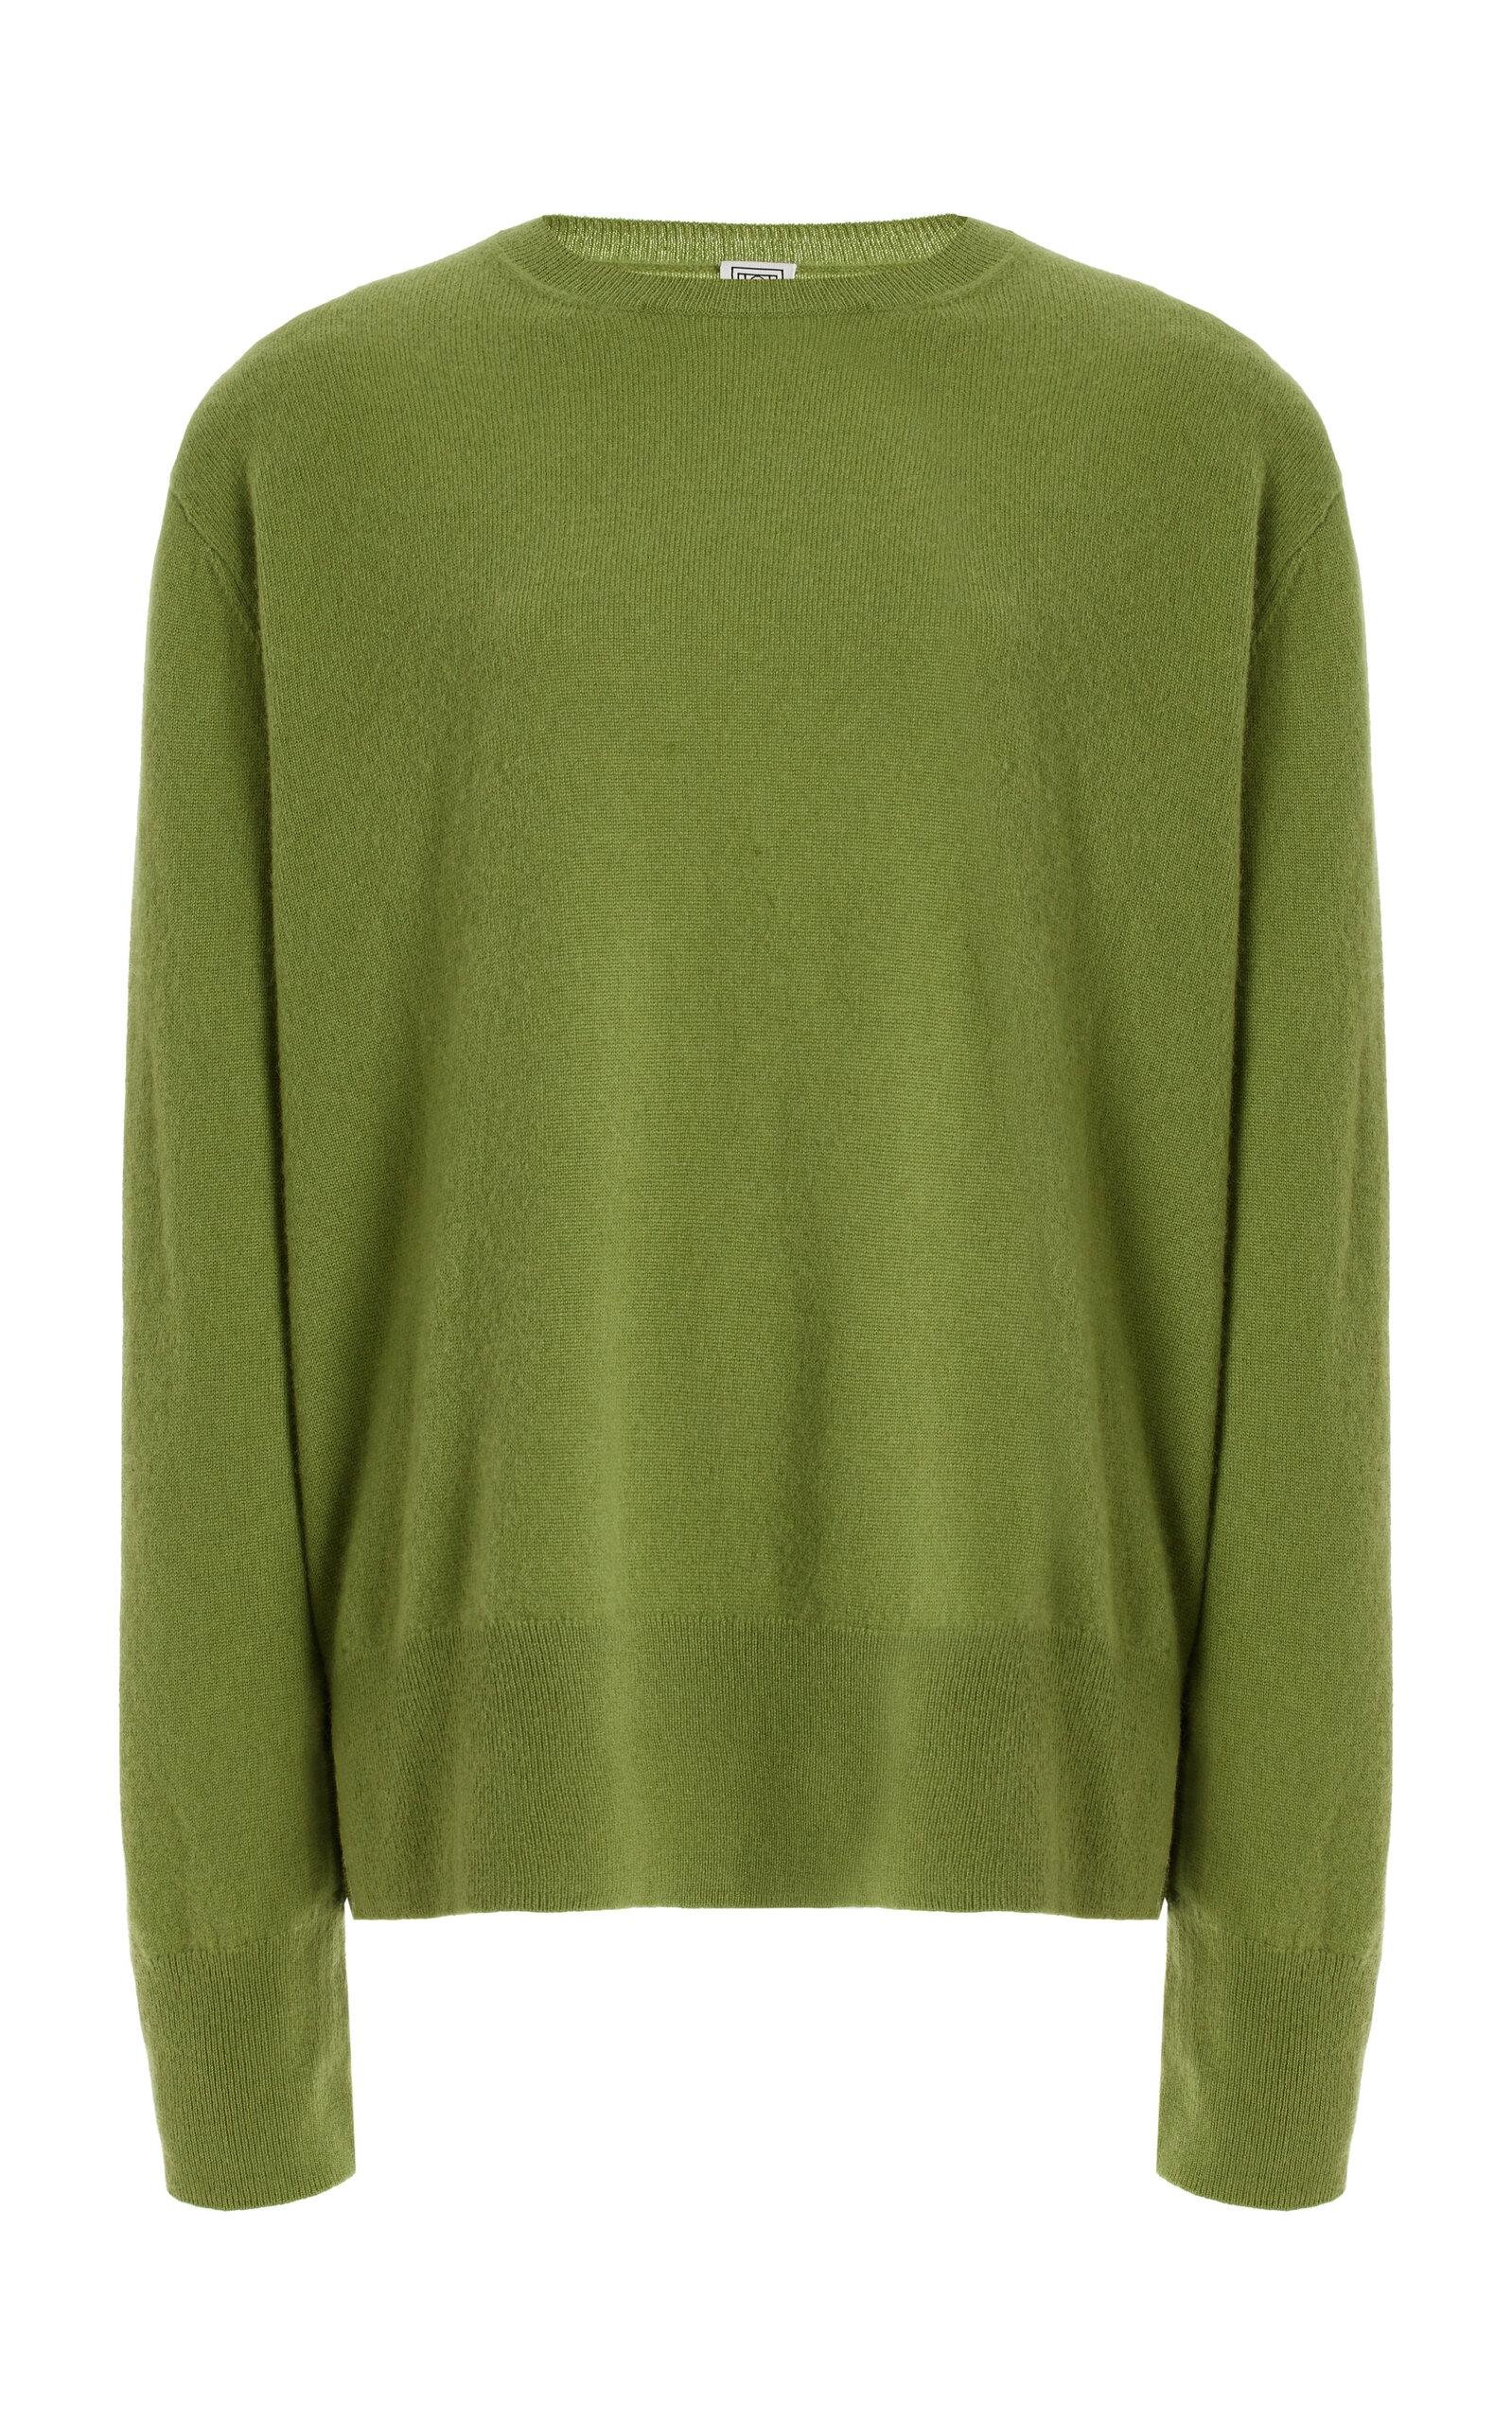 Toteme - Knit Cashmere Sweater - Green - XS - Moda Operandi by TOTEME